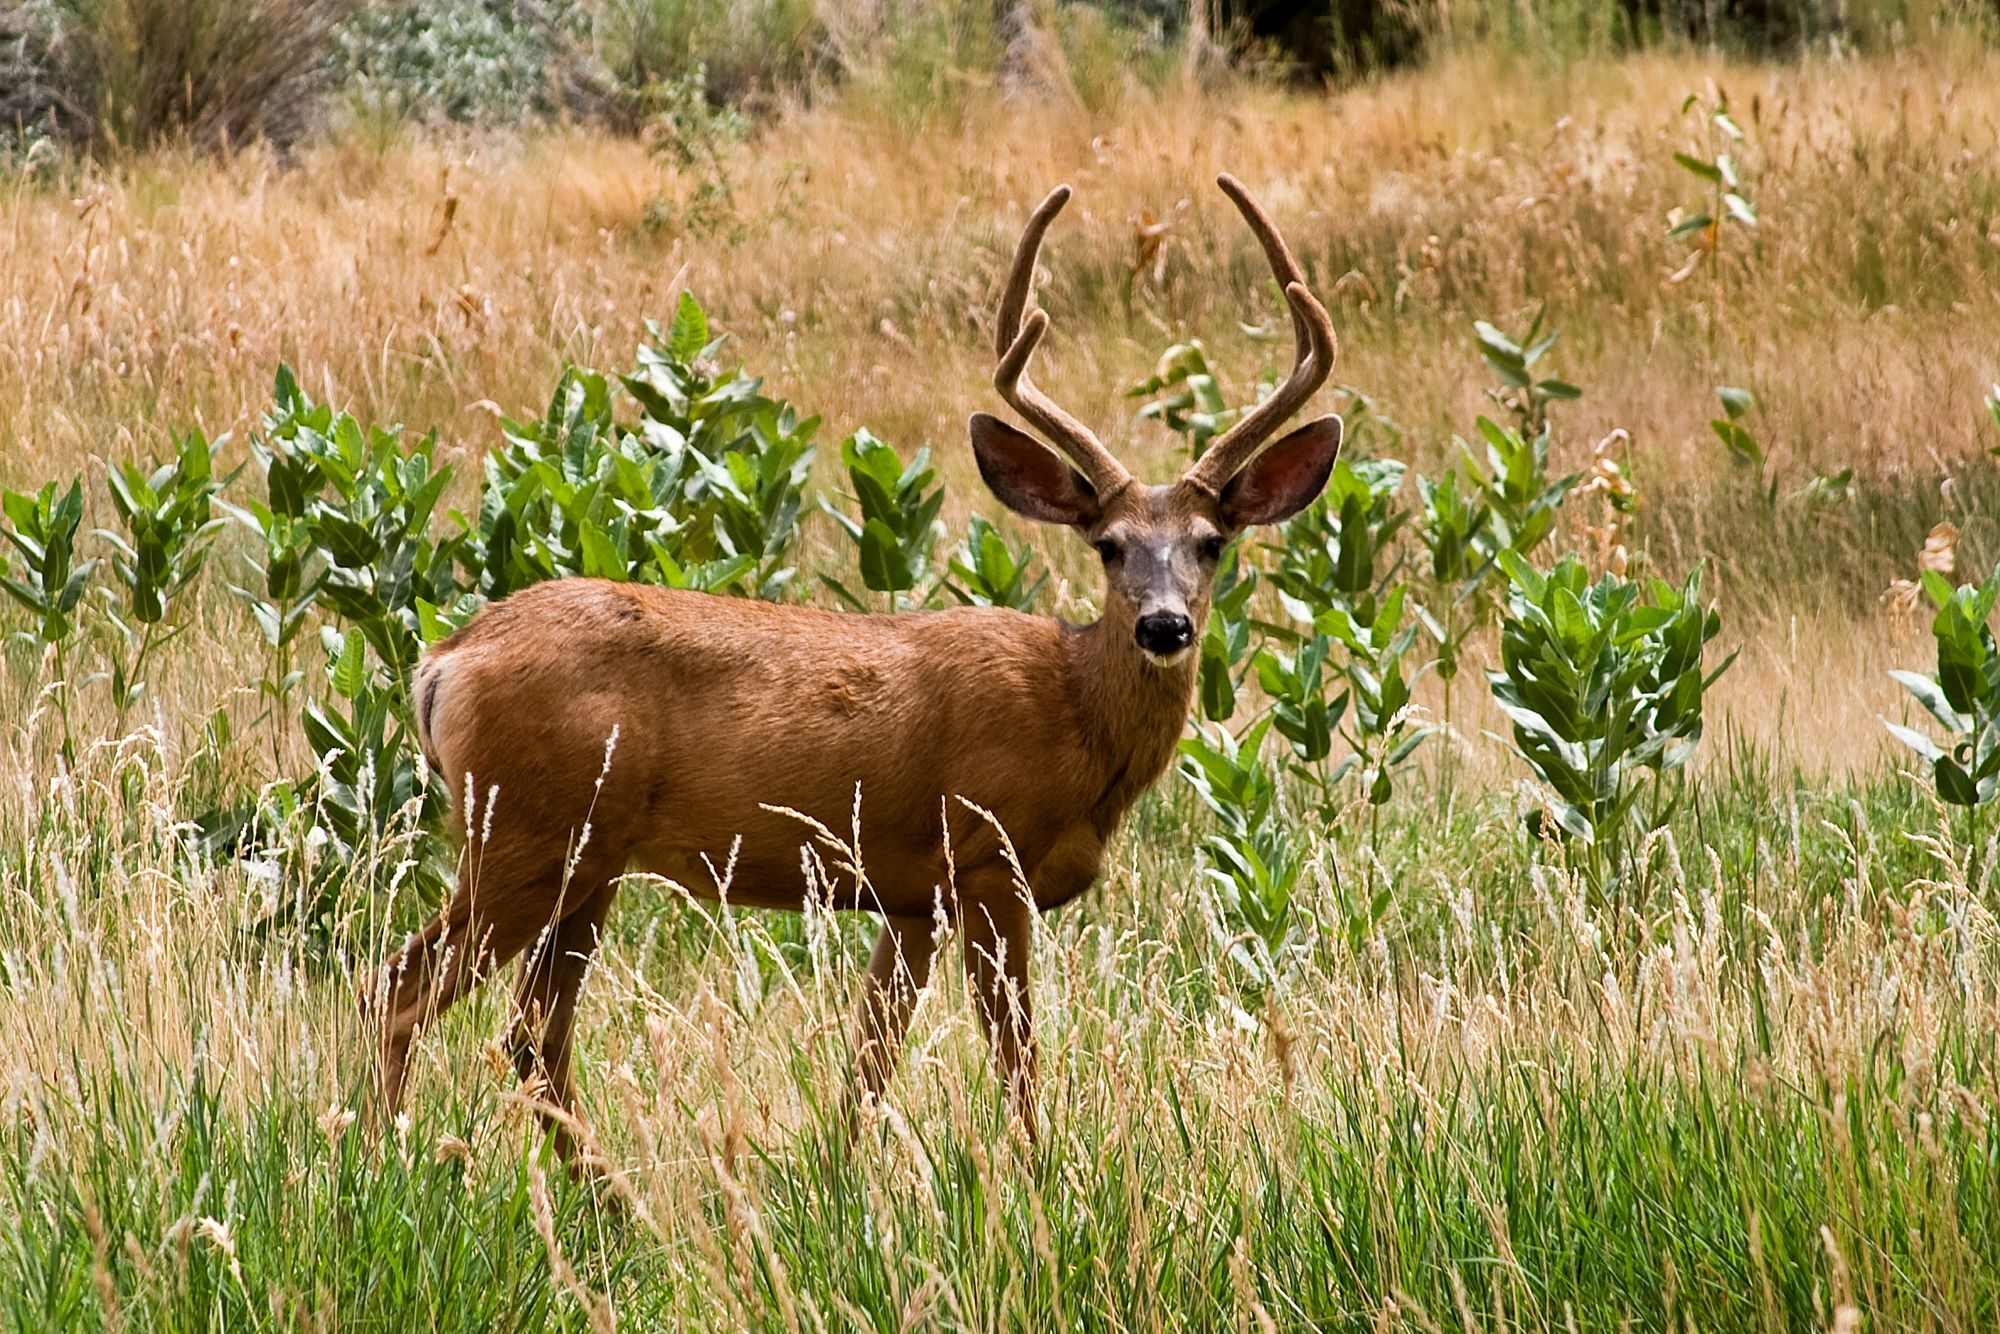 A mule deer in Utah.